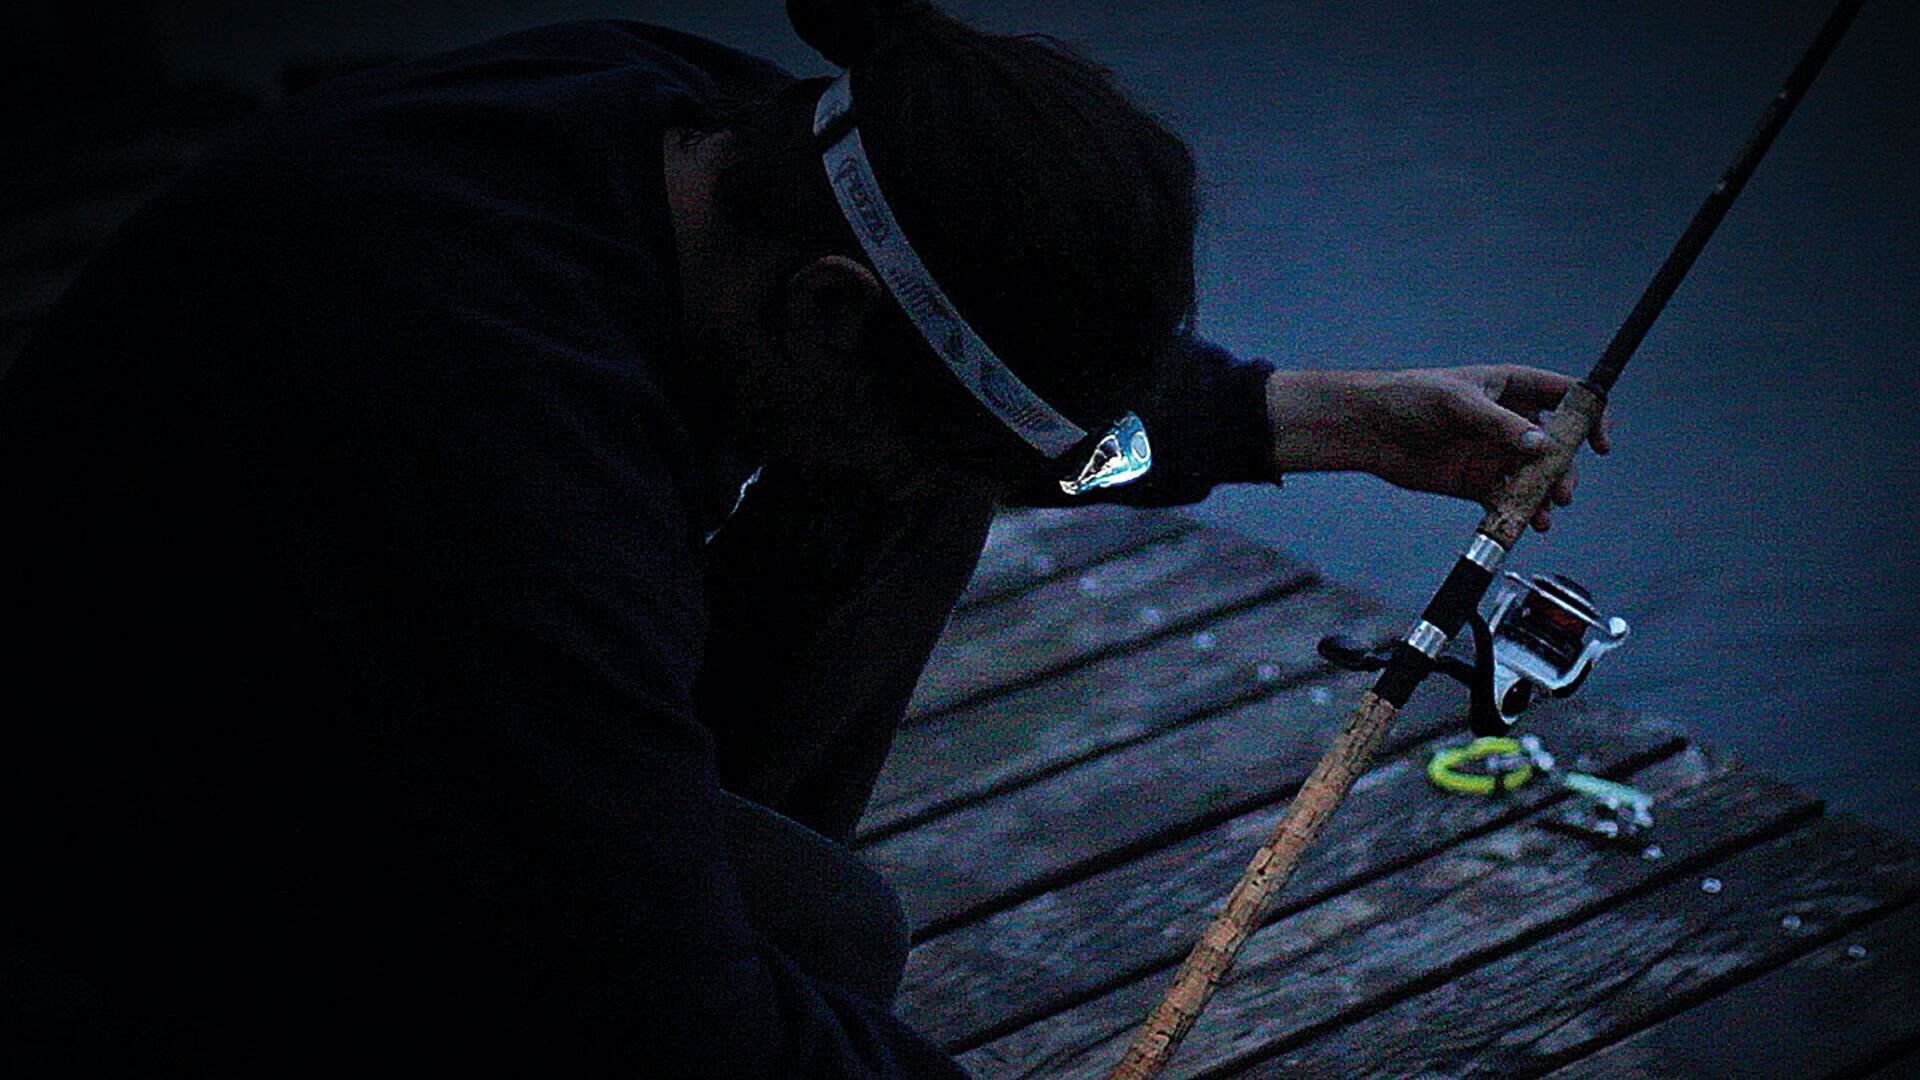  Eine Stirnlampe bietet beim Nachtfischen unverzichtbare Dienste. © André Suter  